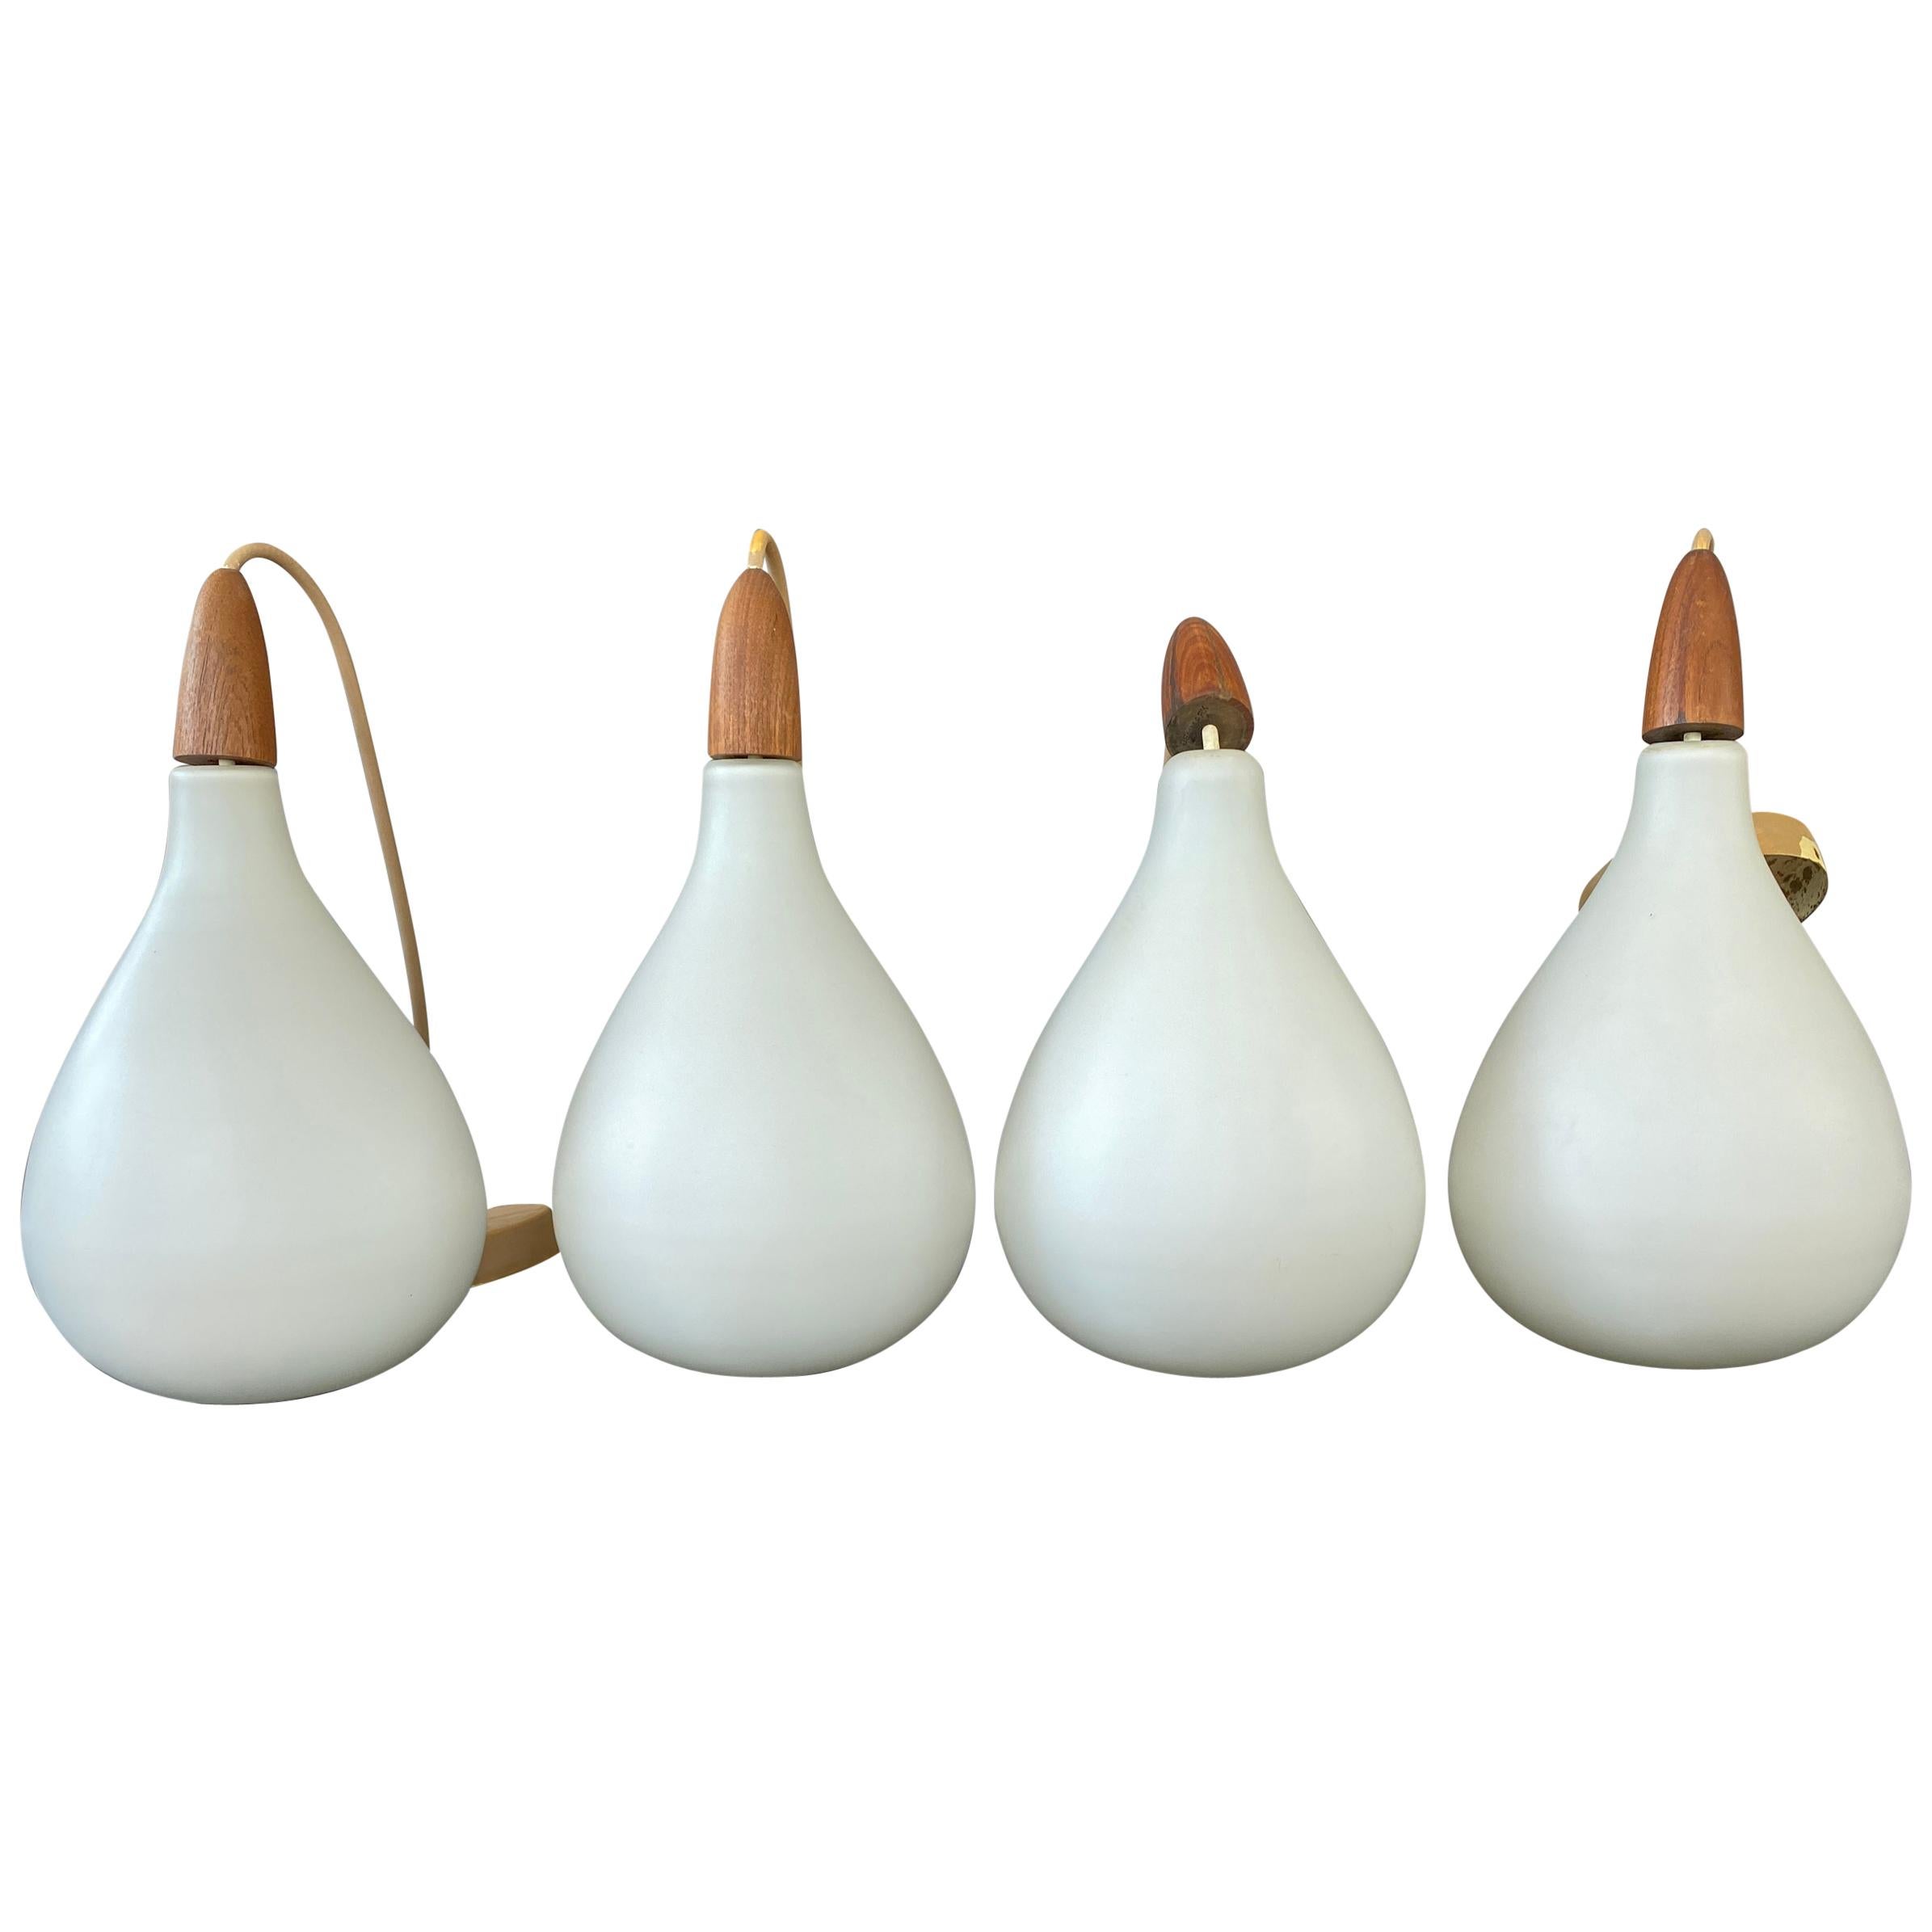 Set of 4 Danish White Cased Glass and Teak Pendants